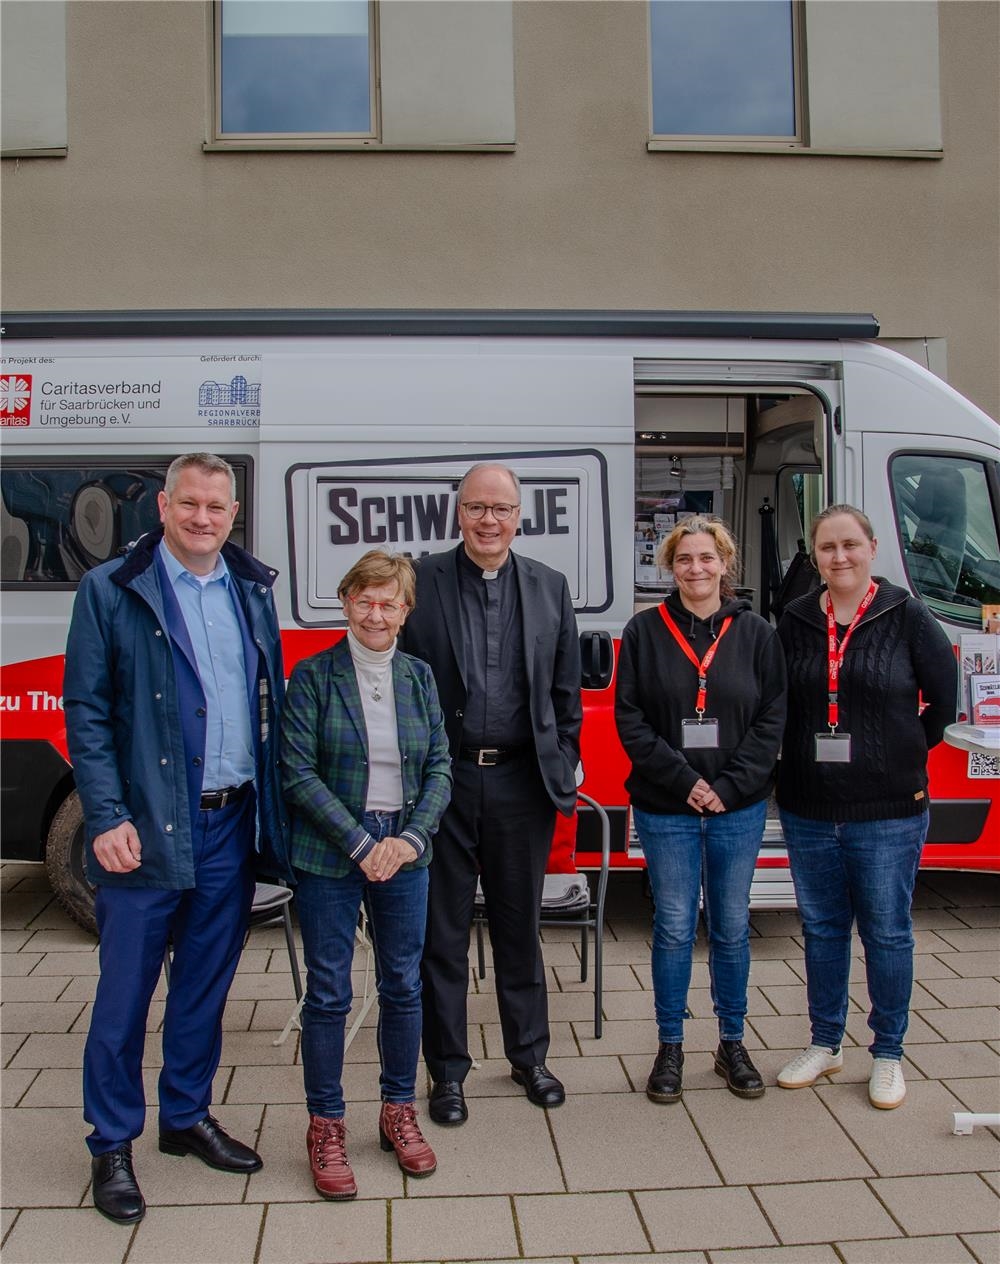 Zwei Männer und drei Frauen stehen vor einem modernen Camper mit dem Aufdruck Schwätzje Mobil (Caritasverband für Saarbrücken und Umgebung e.V. (Götz Plettke)